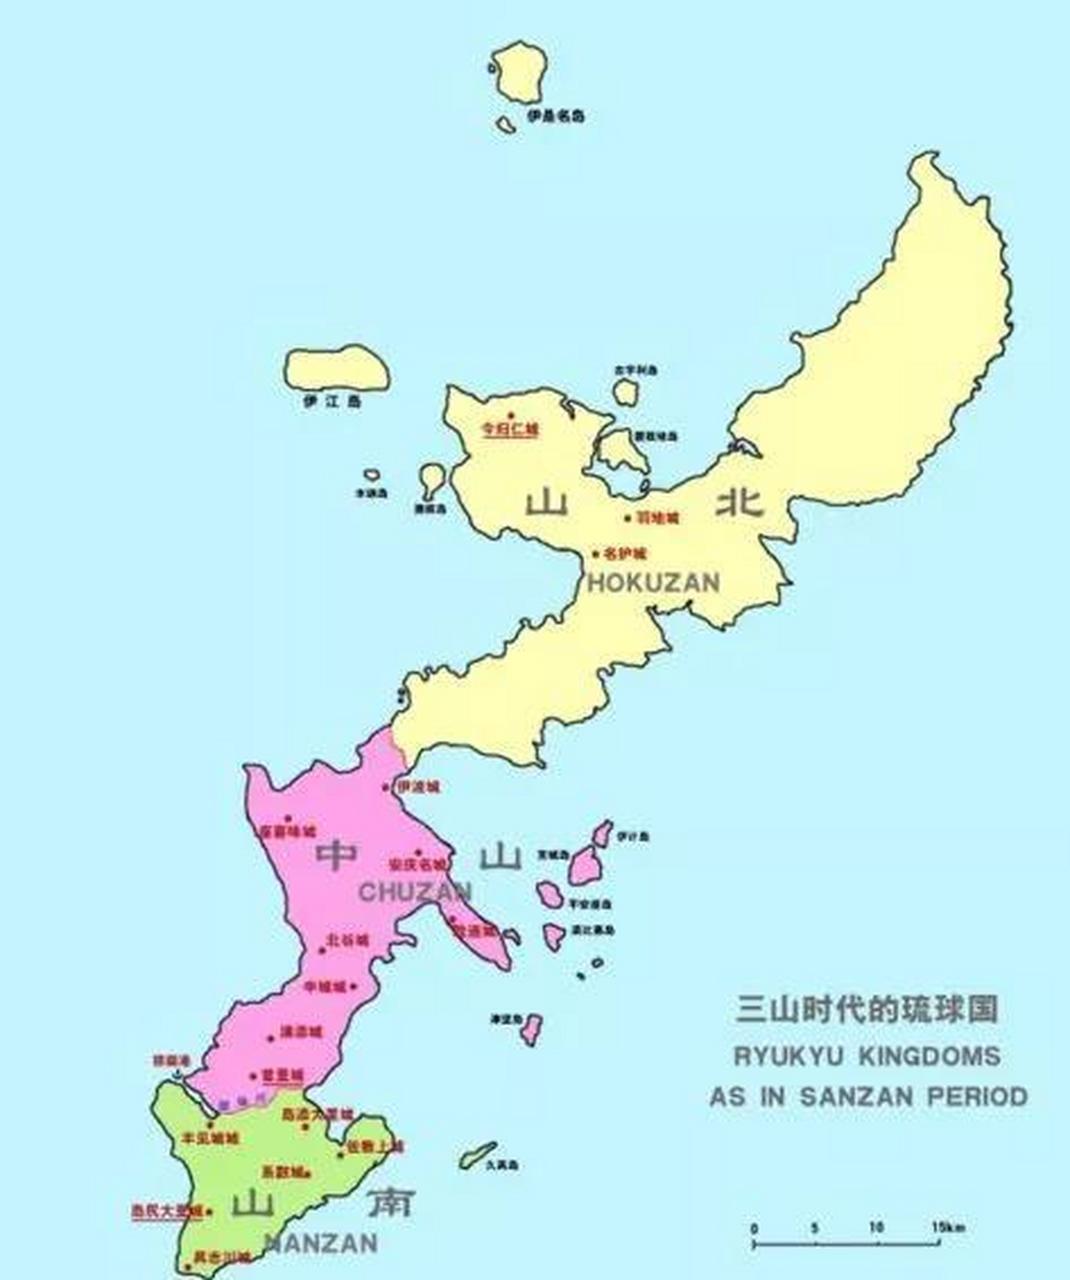 琉球历史上一直是我国的藩属国,每当新国王登基都会派使者来请求皇帝